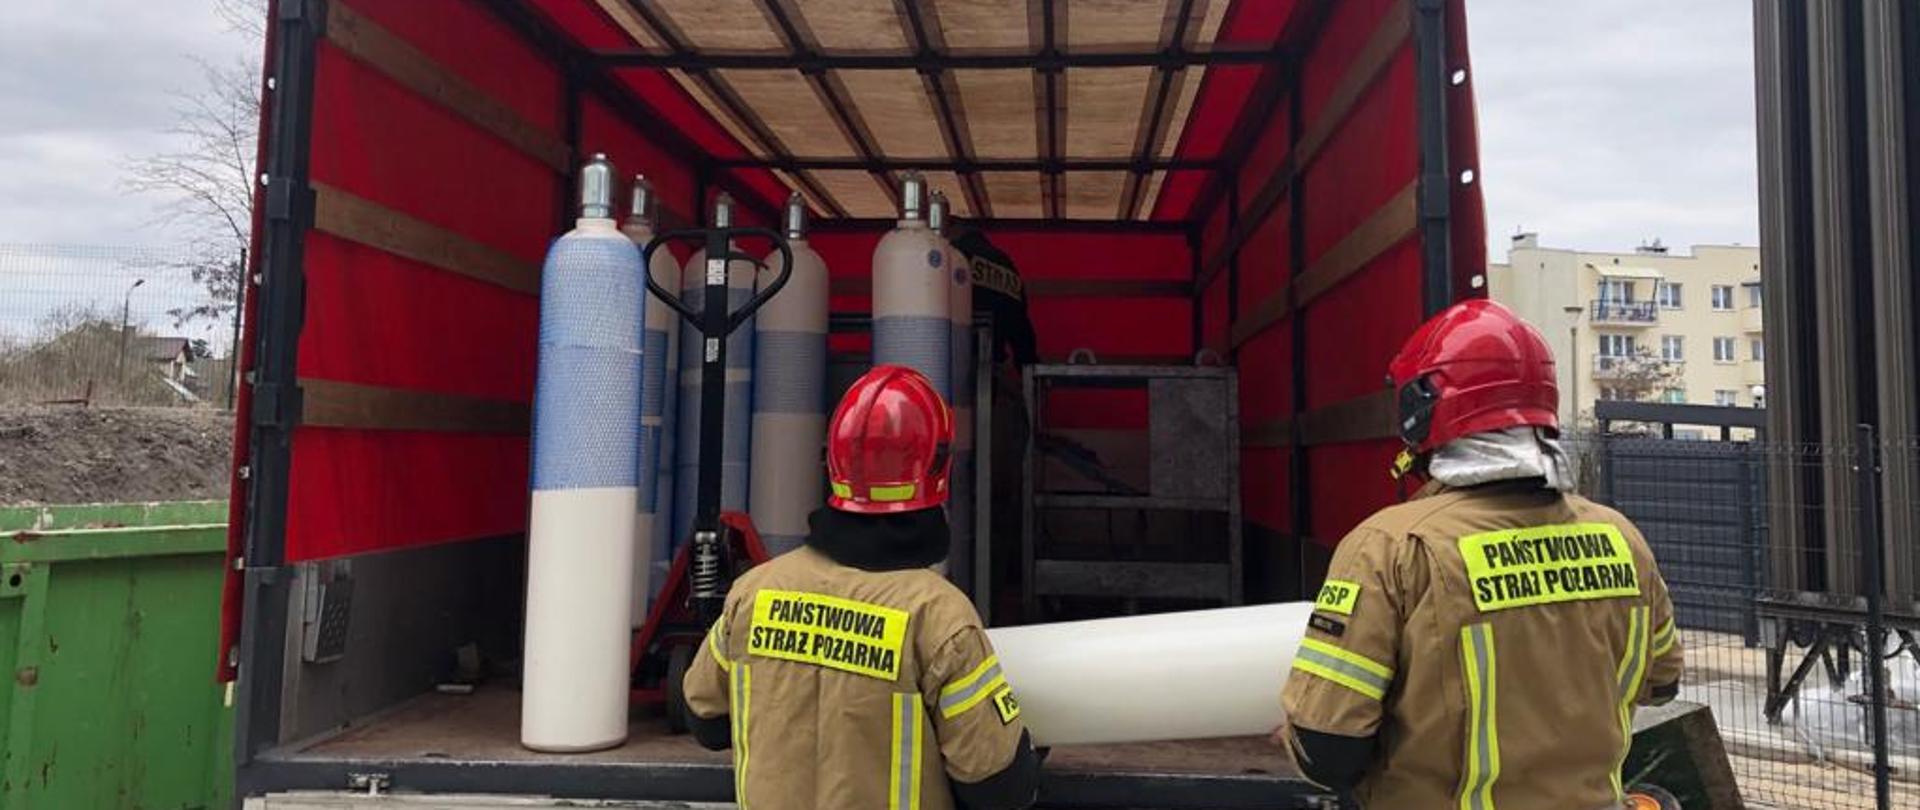 Zdjęcie przedstawia dwóch strażaków wyładowujących butle z tlenem z samochodu dostawczego. Pod plandekom za nimi widać kolejne butle z tlenem.